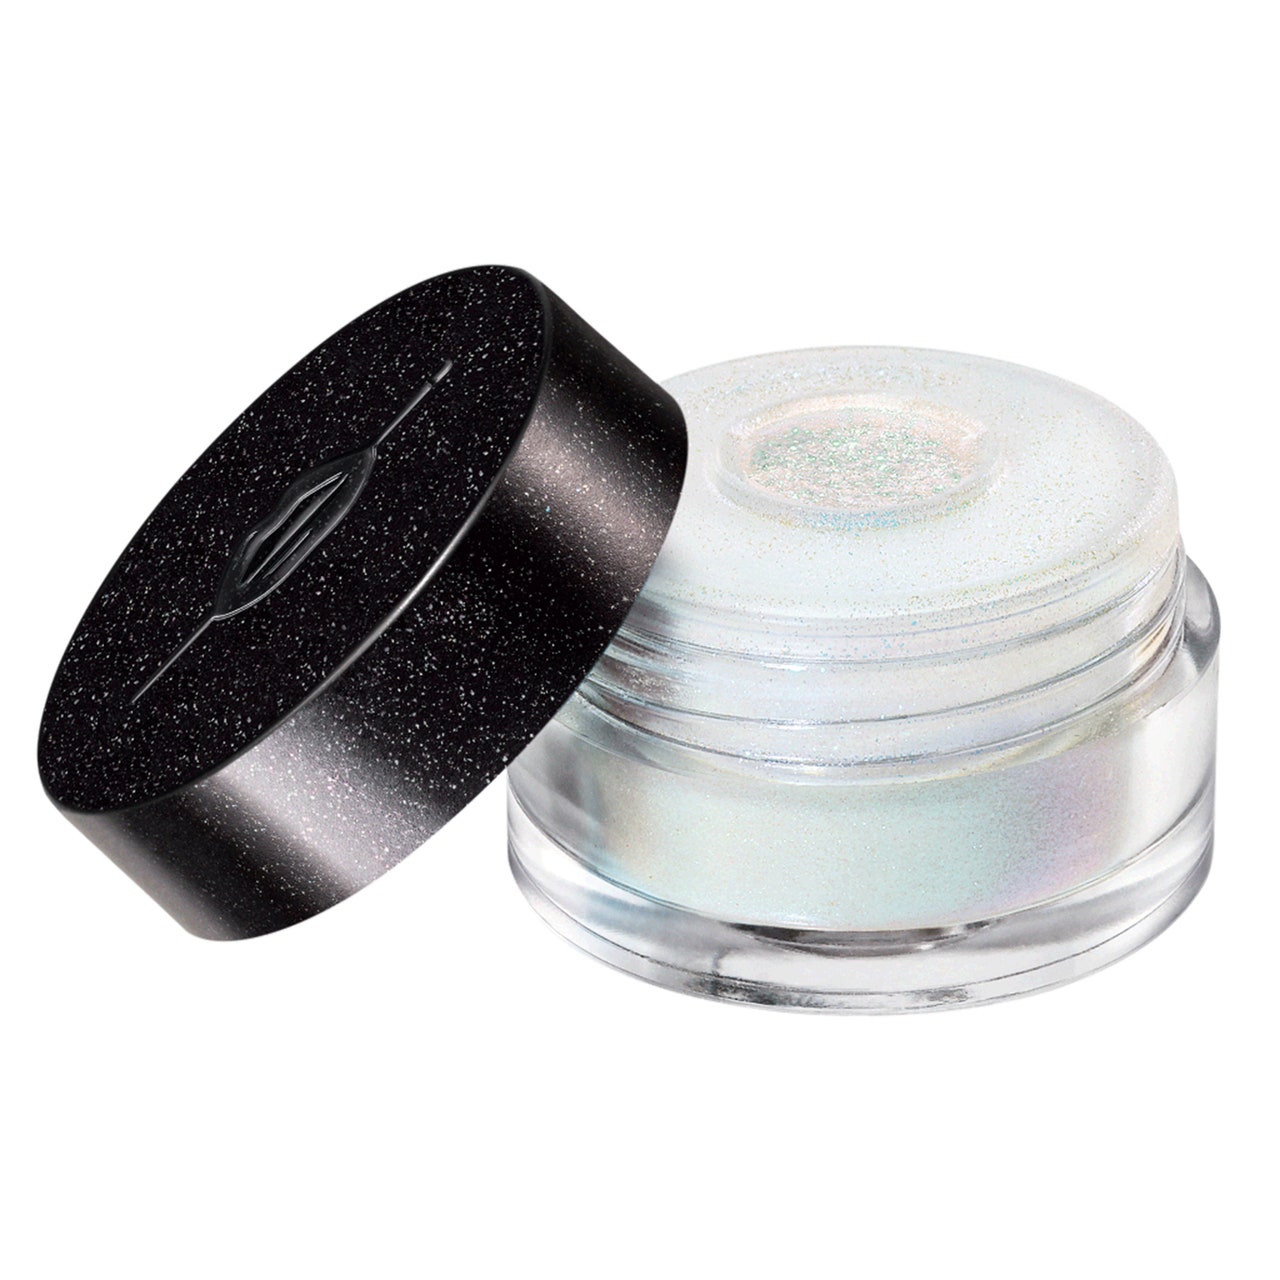 Make Up For Ever Star Lit Diamond Powder Glas mit blau-weißem holografischem Pulver mit angelehntem schwarzen Deckel auf weißem Hintergrund